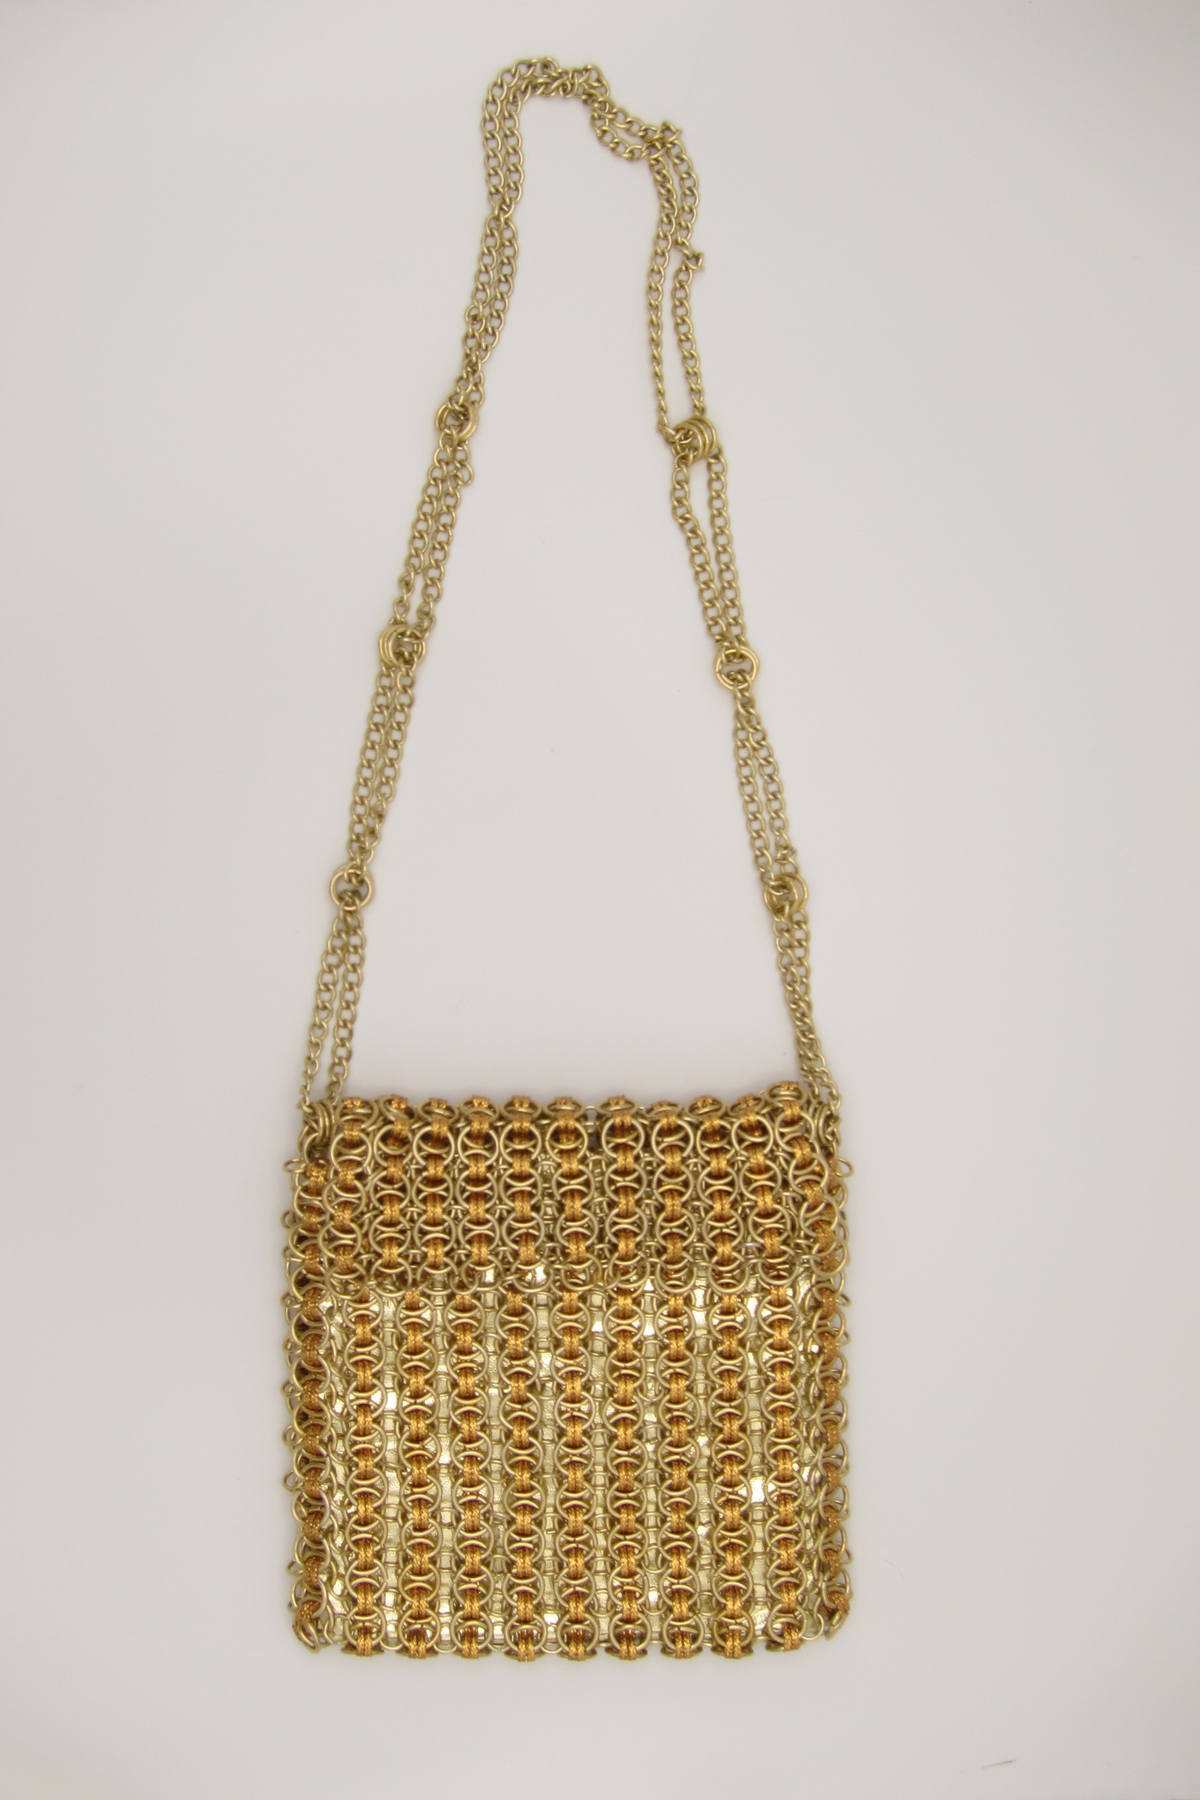  SEWACC Bag Hand Chain Gold Purse Chain Purse Chains